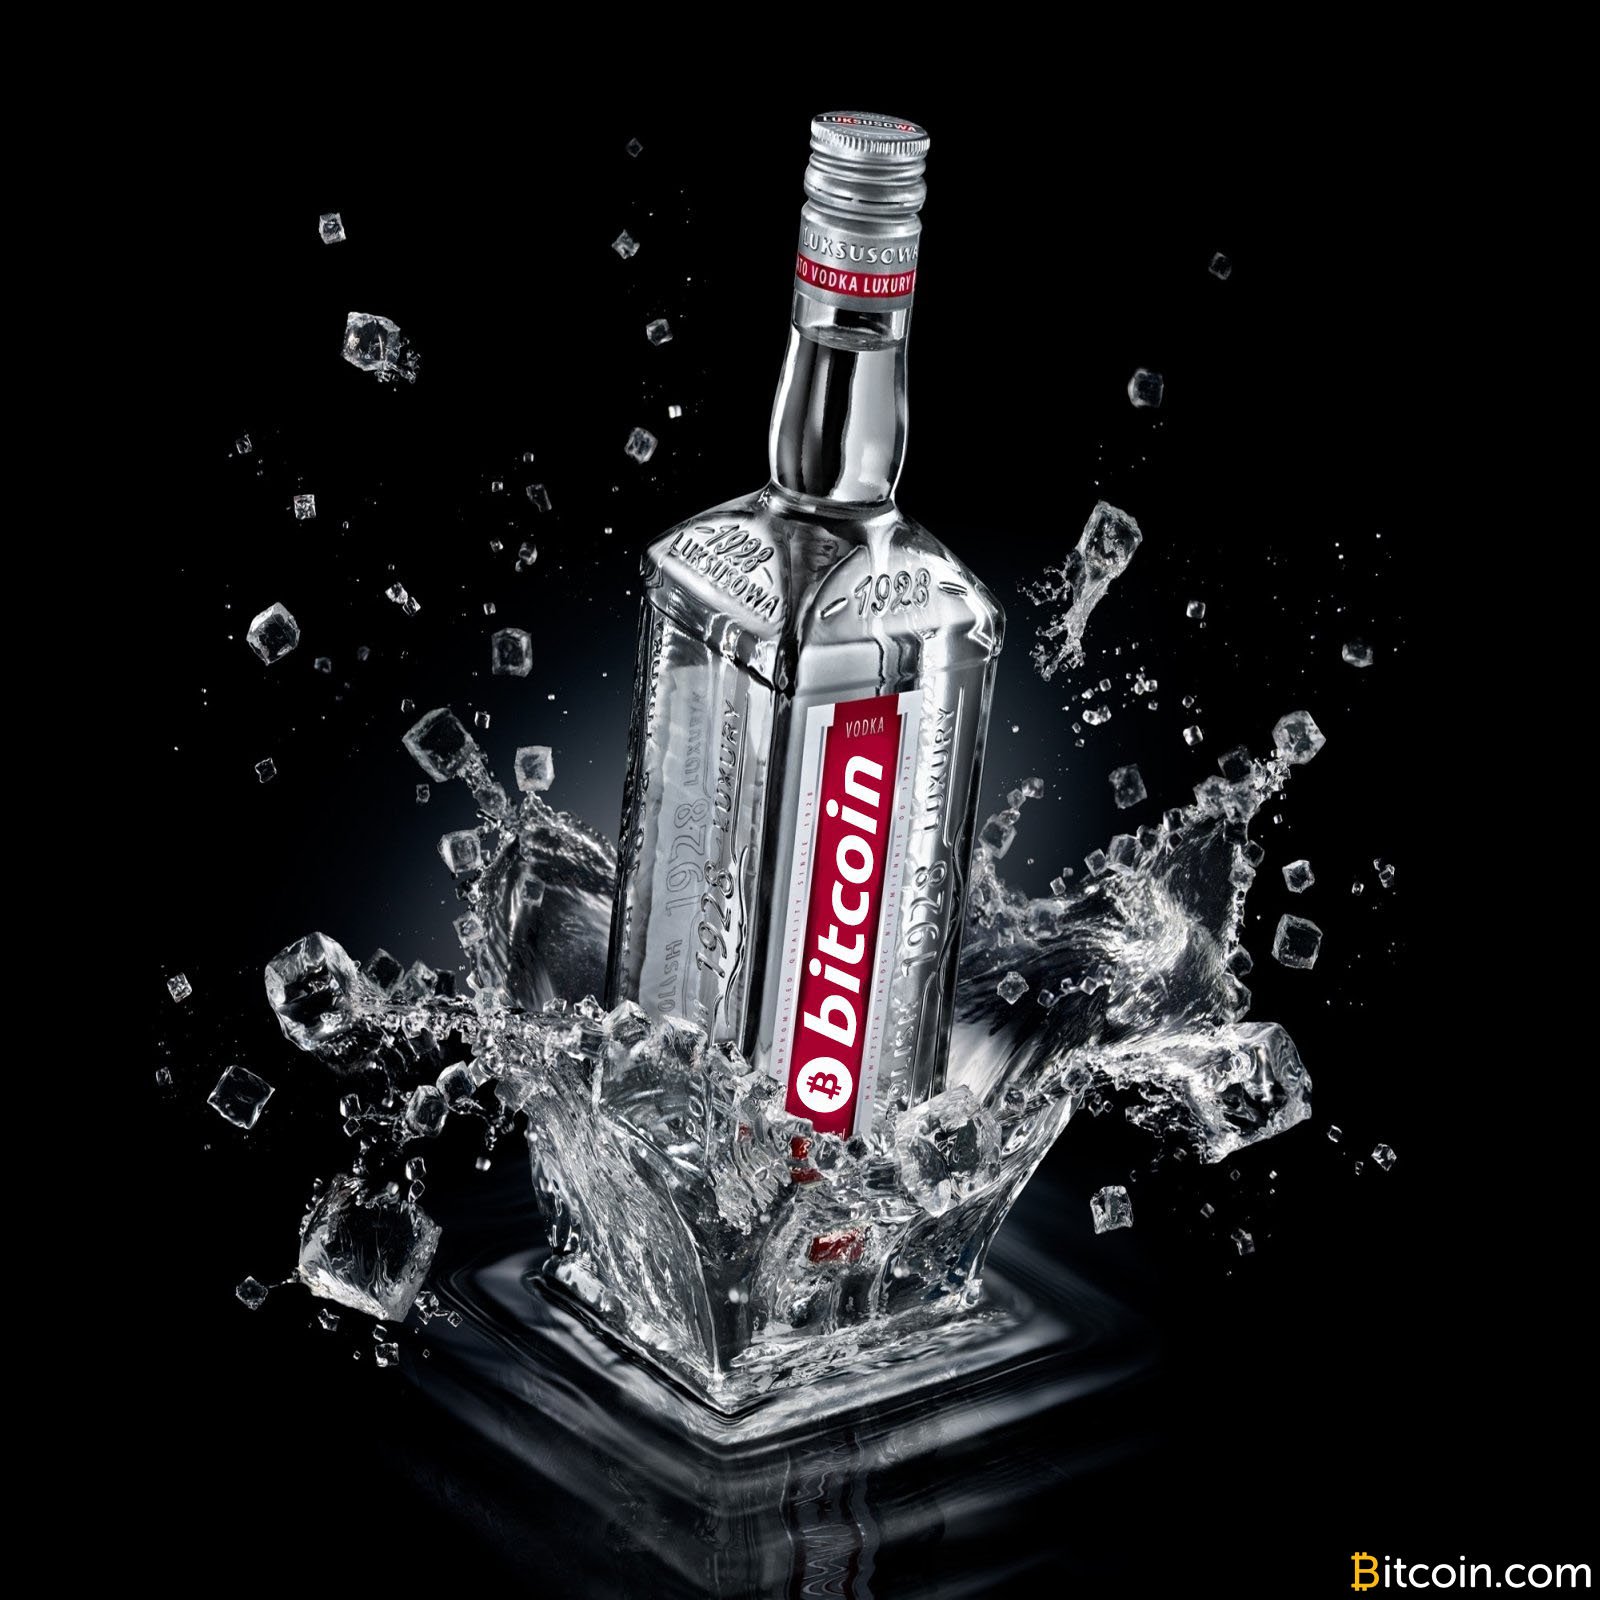 Russian Entrepreneur Files for Trademarks on Vodka Brands 